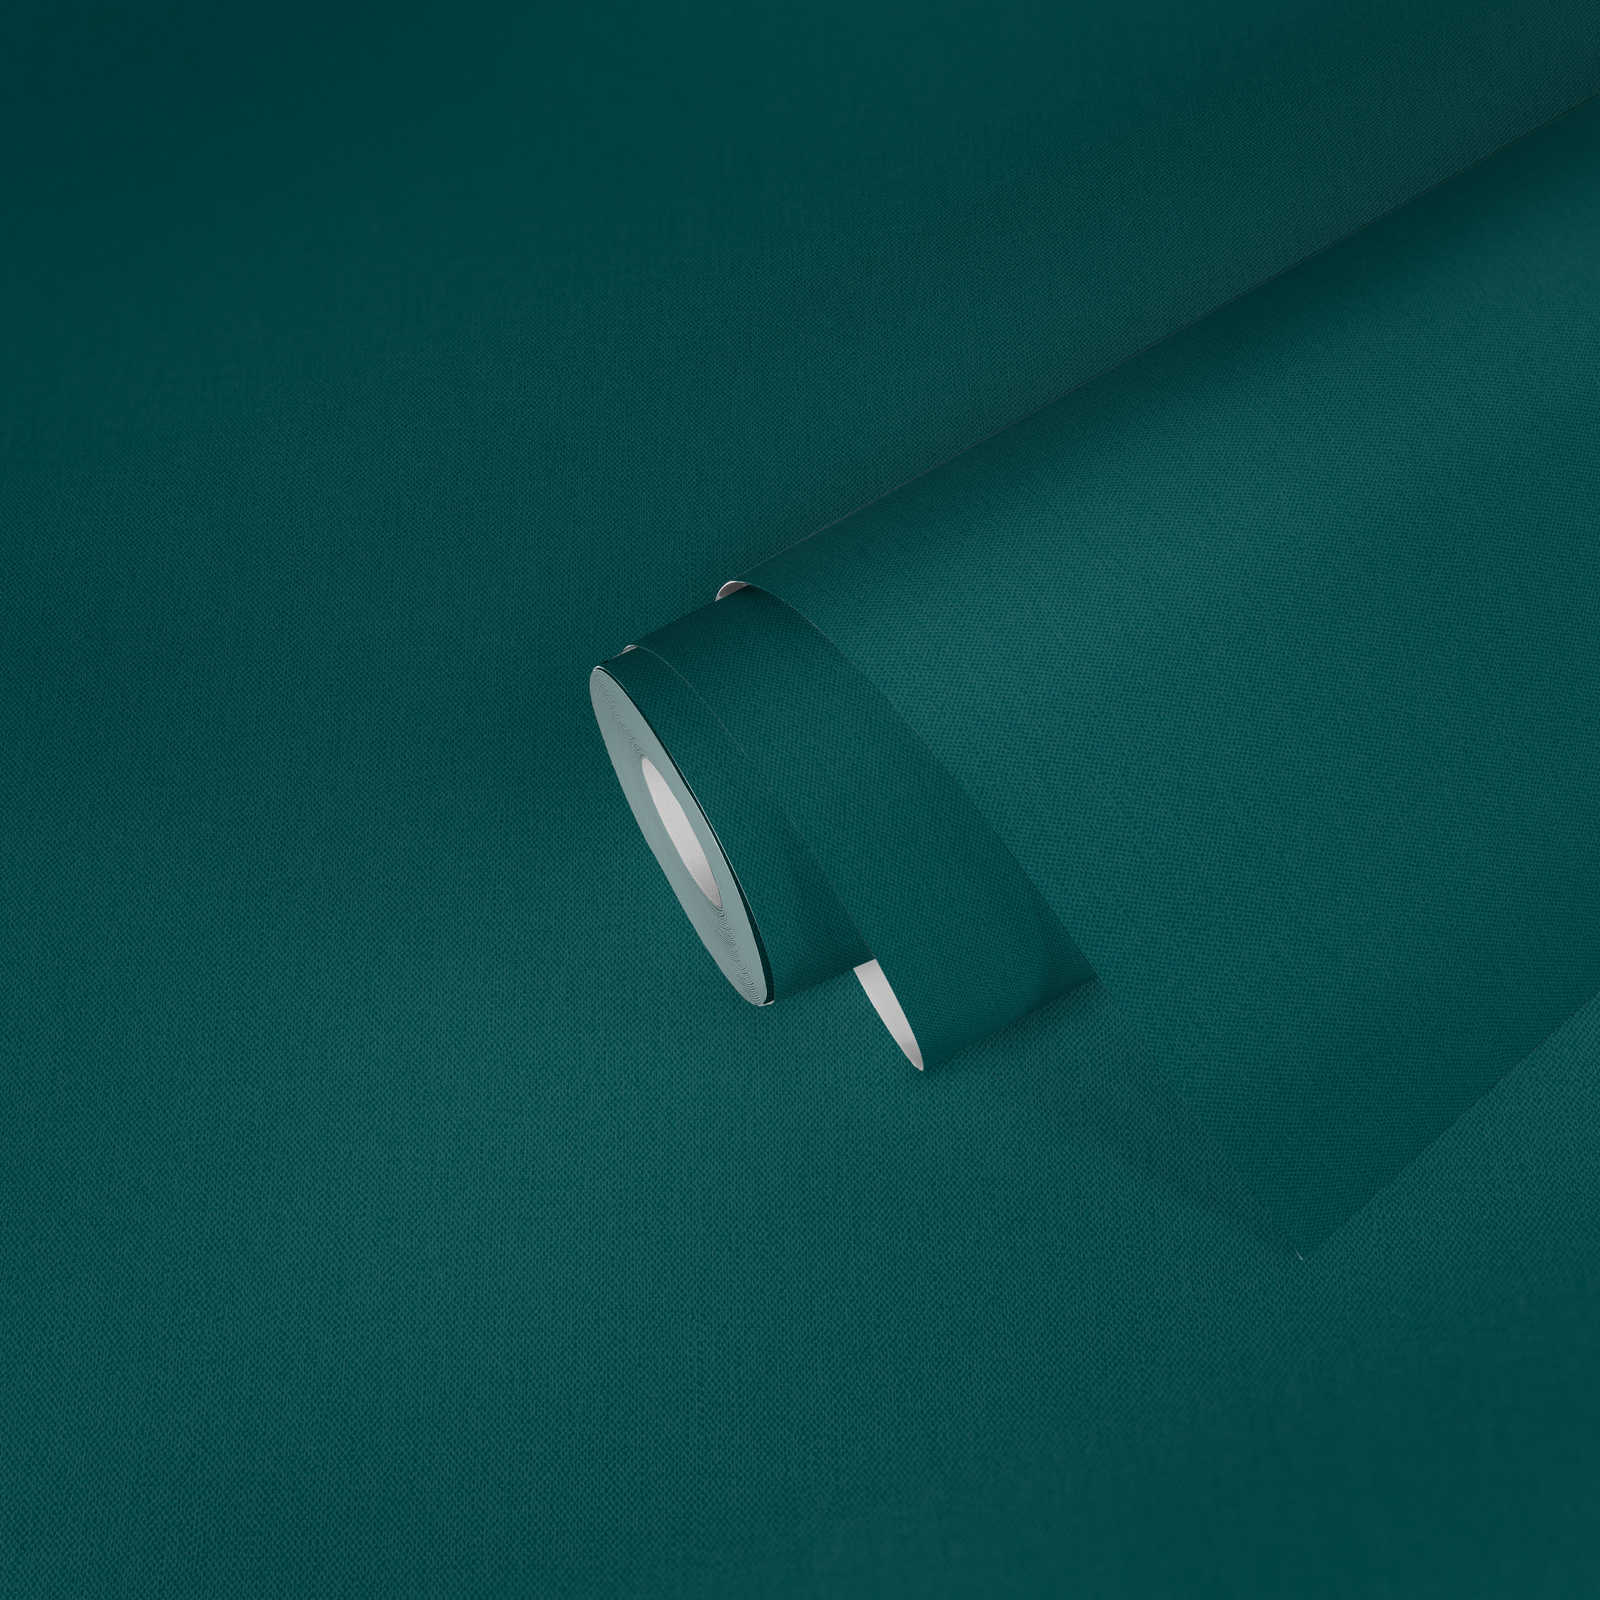             papel pintado verde oscuro con estructura textil uni azul agua mate
        